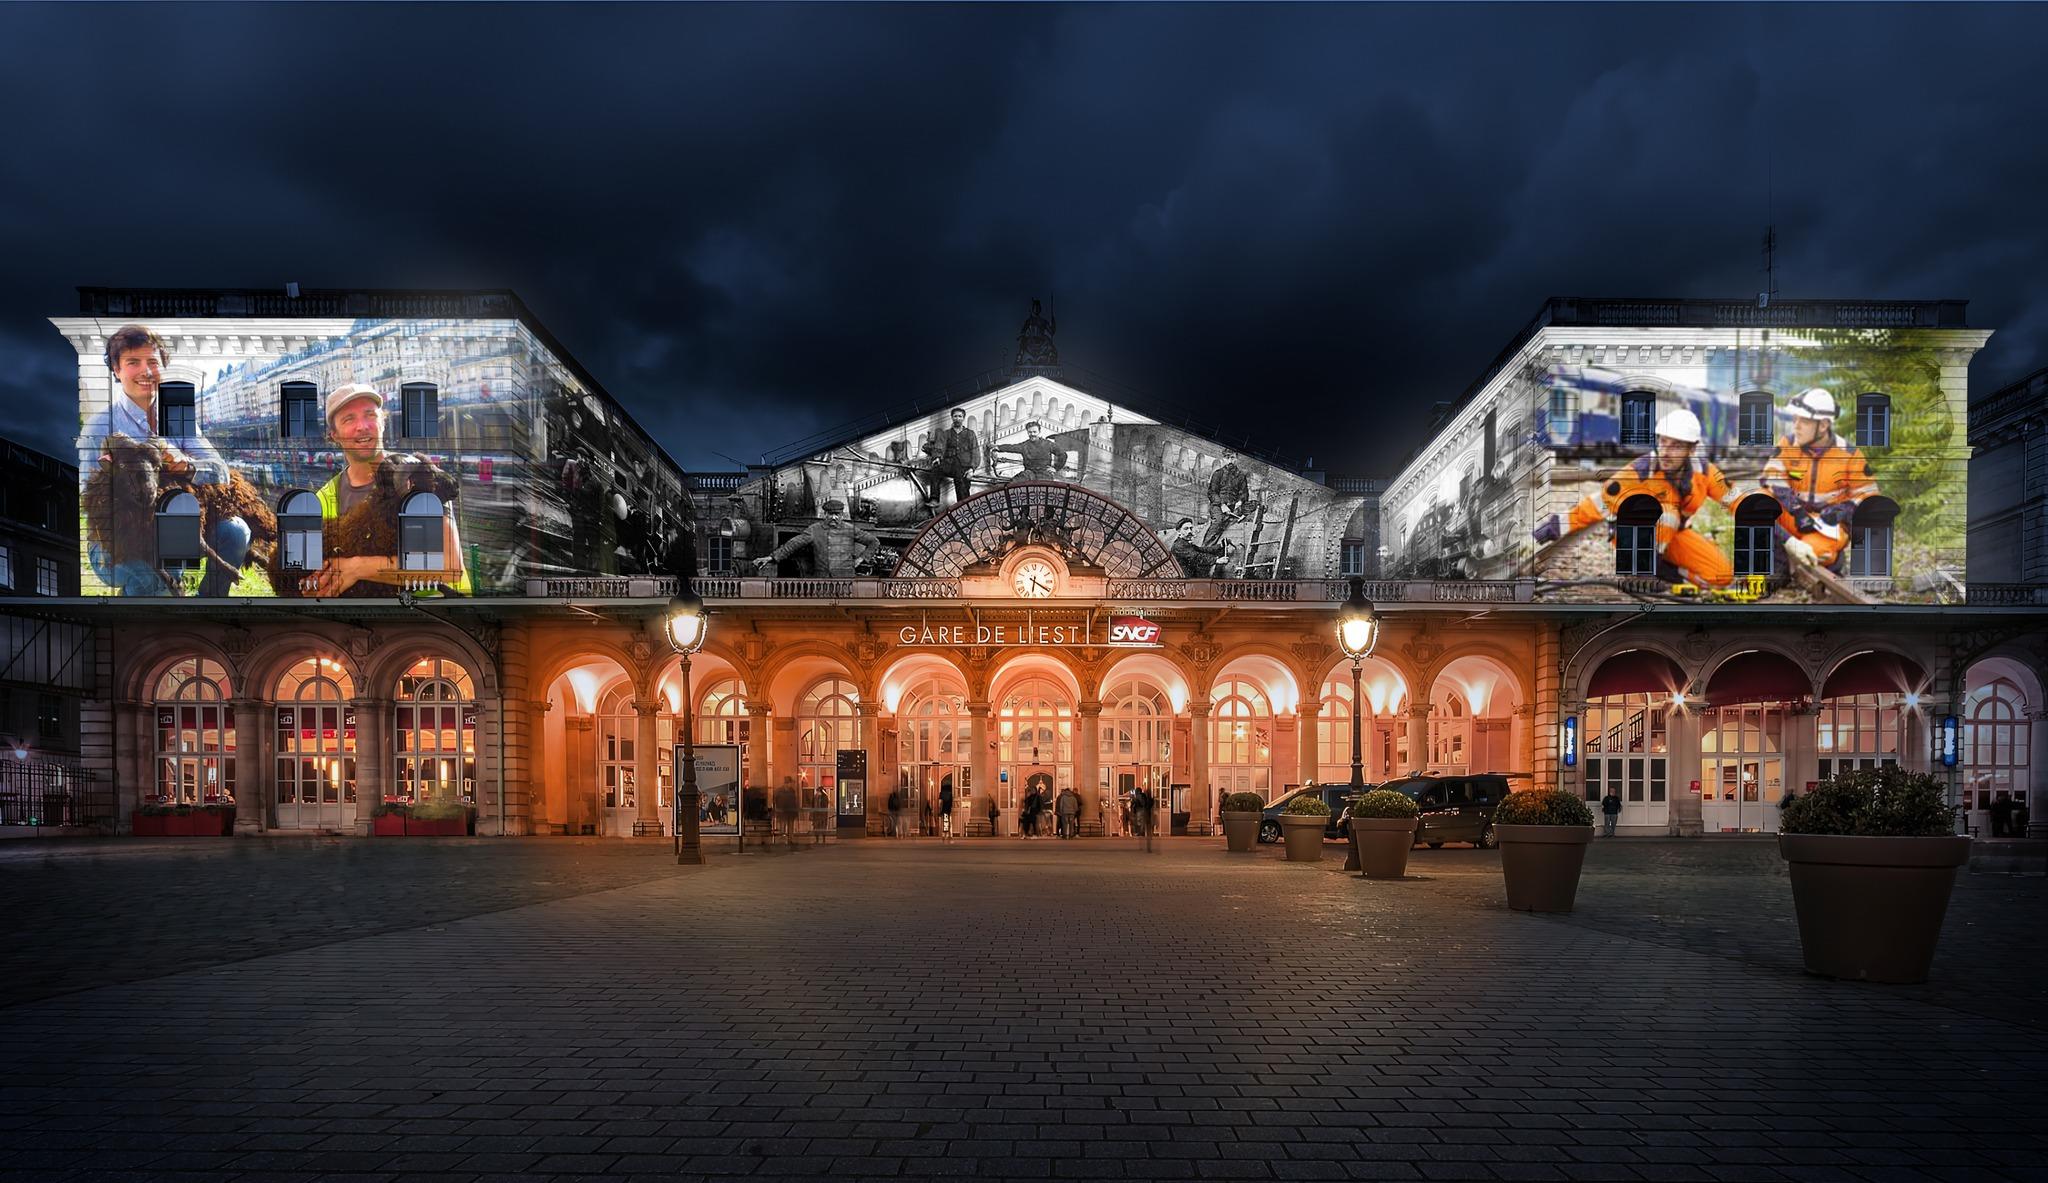 Samedi et dimanche à partir de 20h30, la façade de la gare de l'Est sera le théâtre d’un son et lumière à l'occasion des Journées du patrimoine. Laura Coll